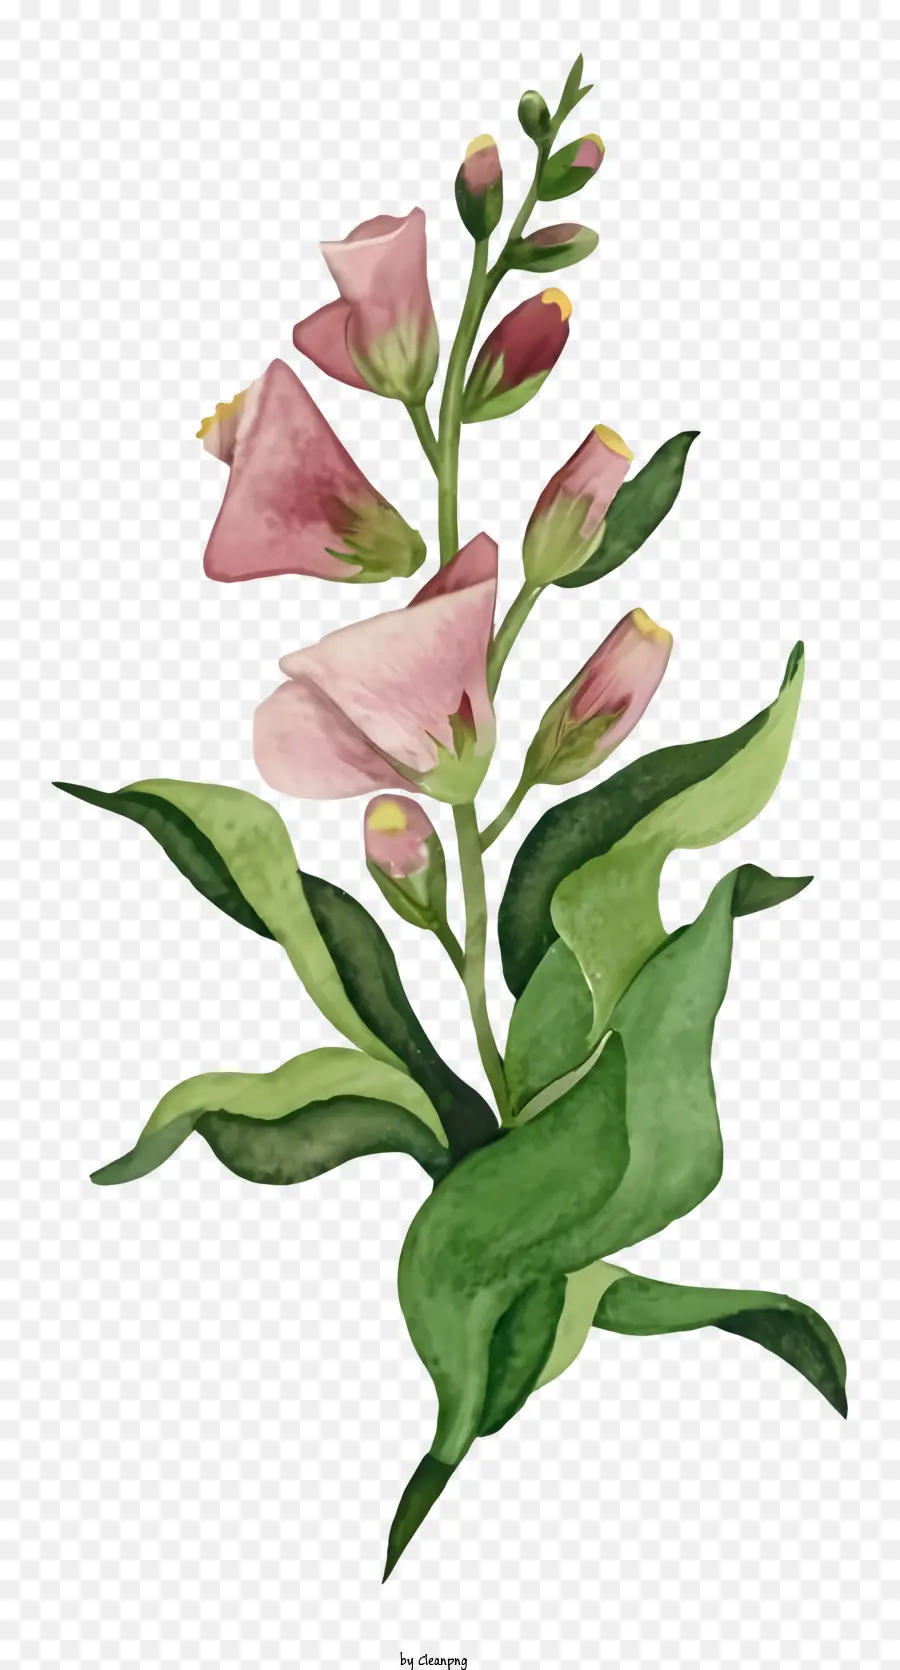 Fiore Disegno - Semplice fiore rosa con grandi foglie verdi